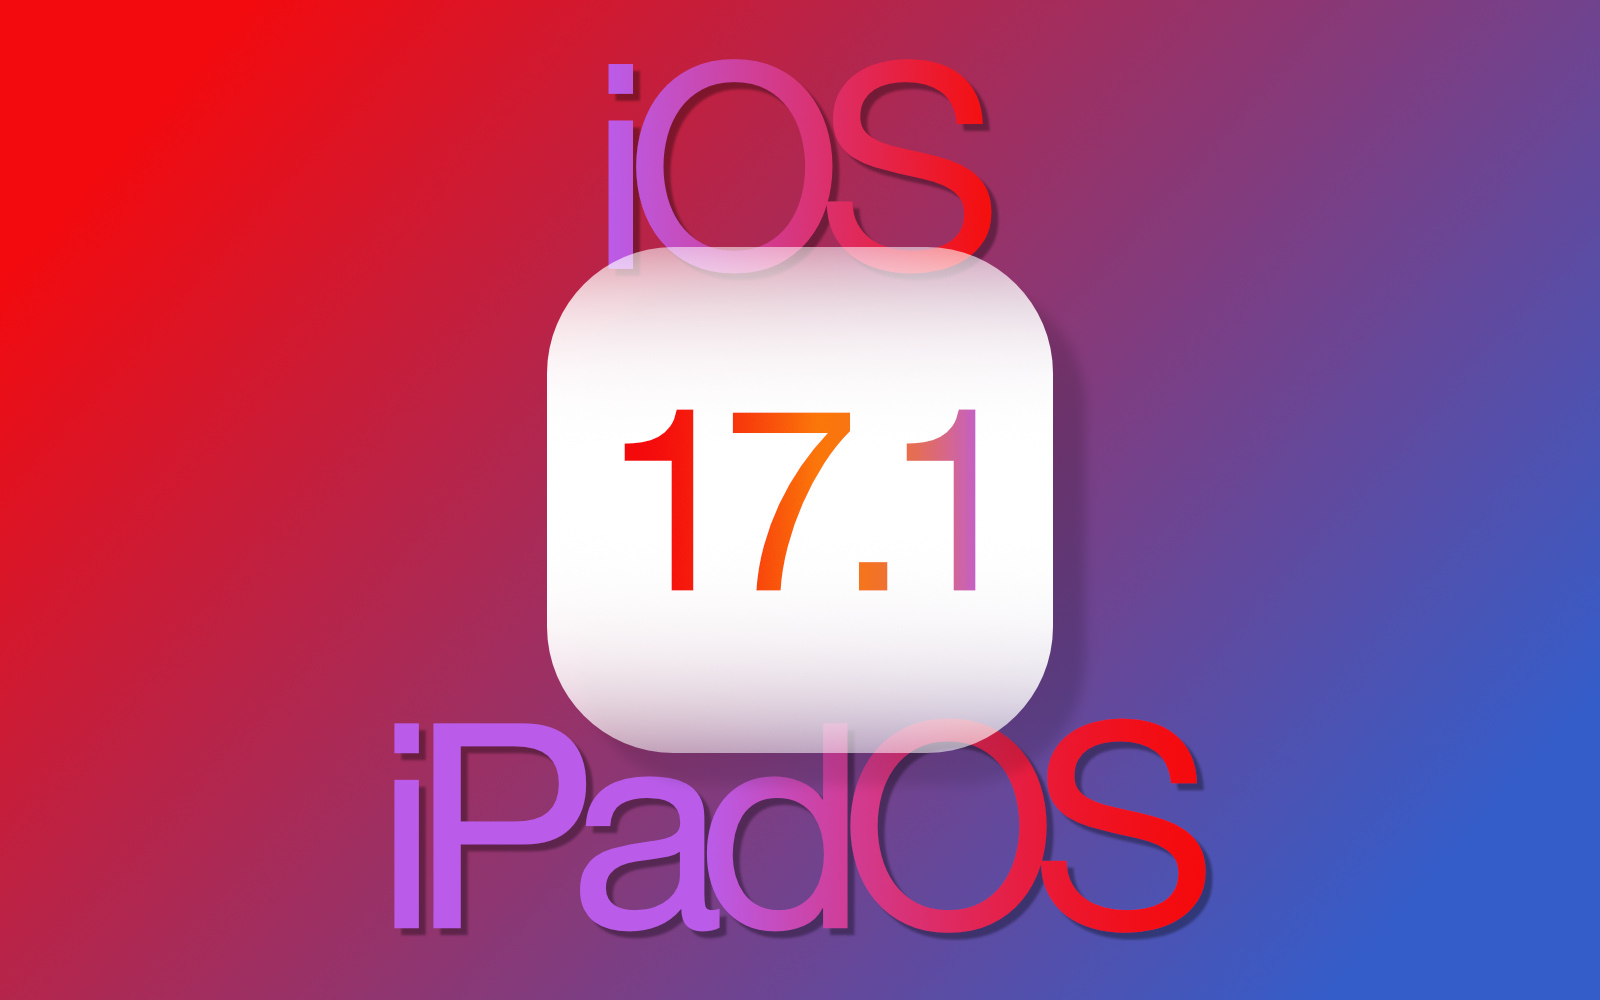 IOS iPadOS 17 1 official release